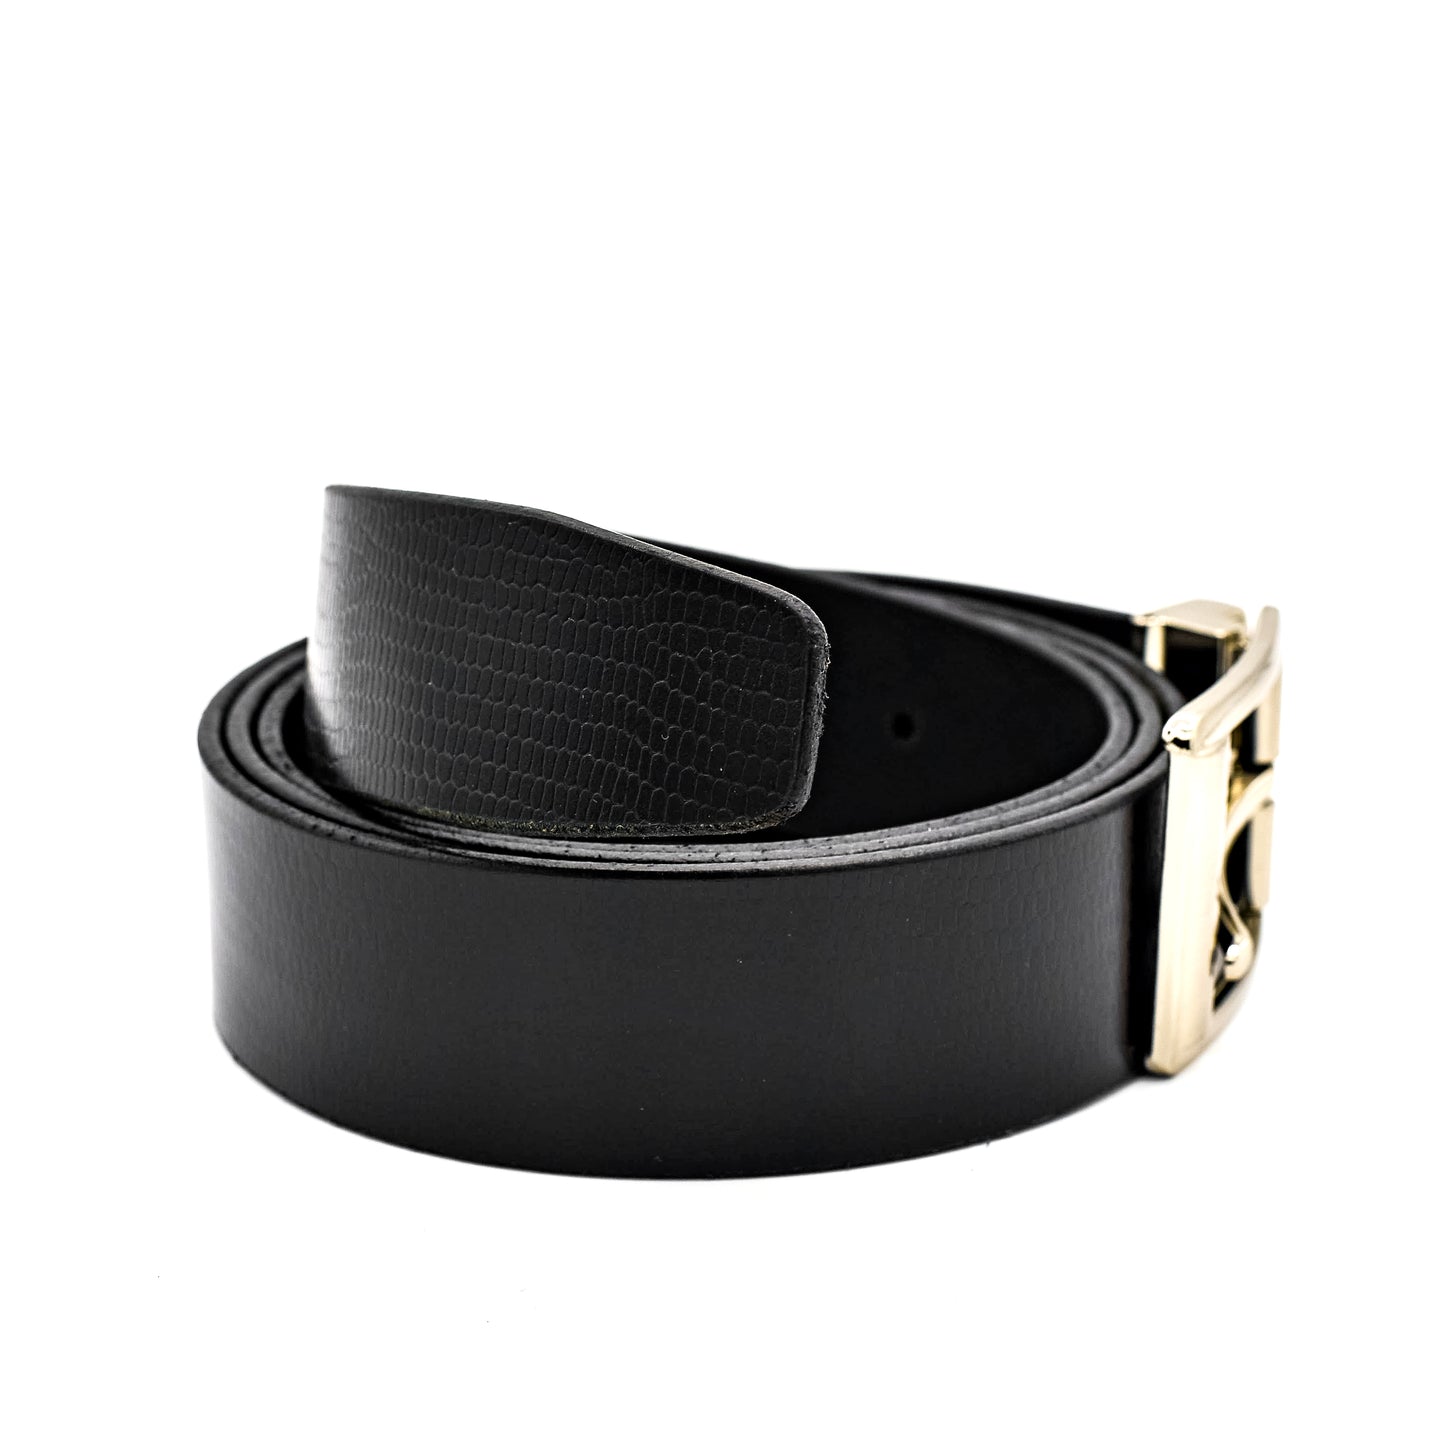 Genuine Leather Belts For Men Dress Black Belts Chrome Finished Buckle  Formal Mens Belt